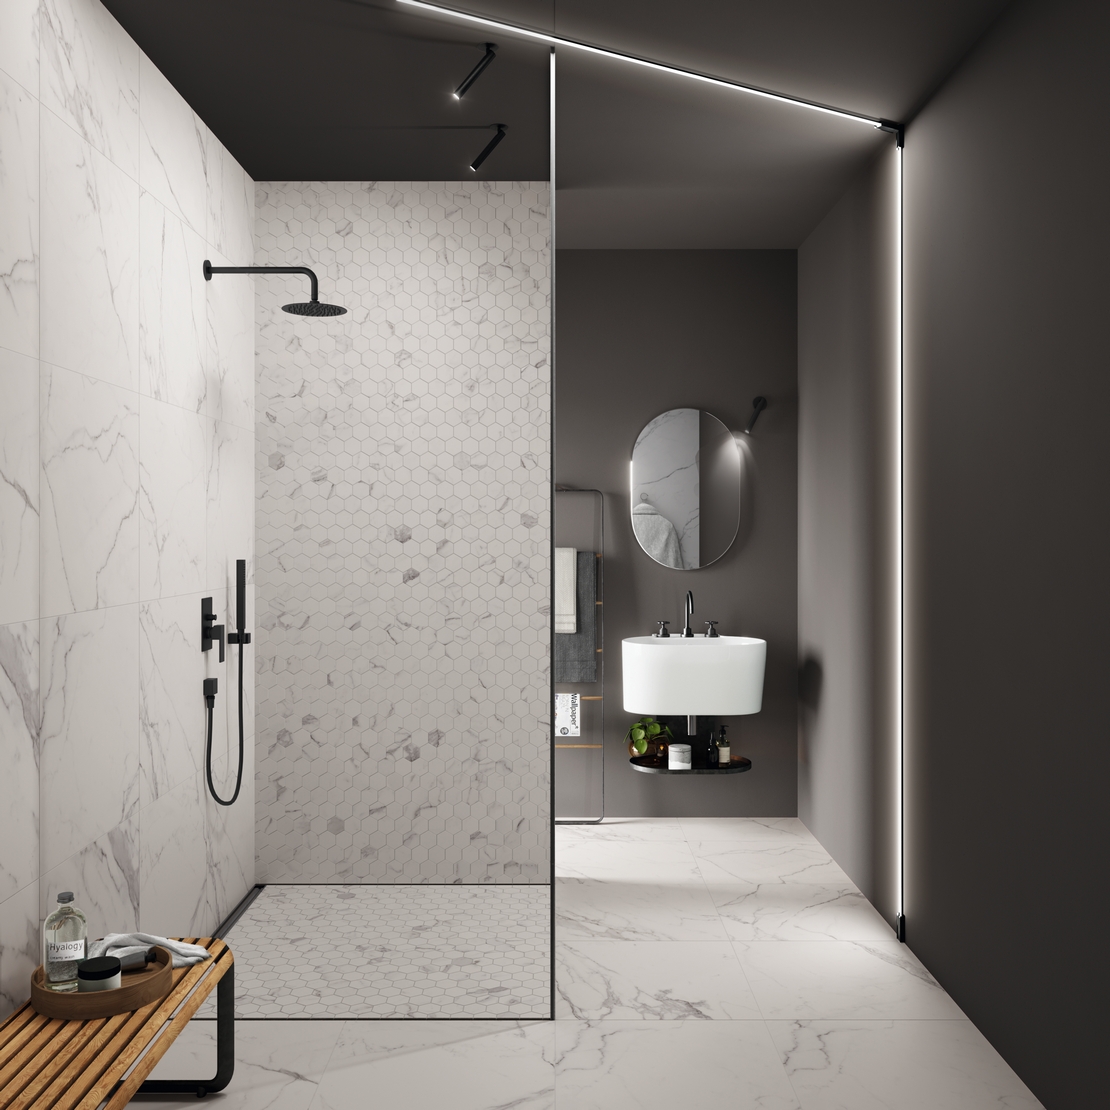 Salle de bains de luxe, style industriel, avec douche. Minimaliste, effet marbre blanc. - Inspirations Iperceramica